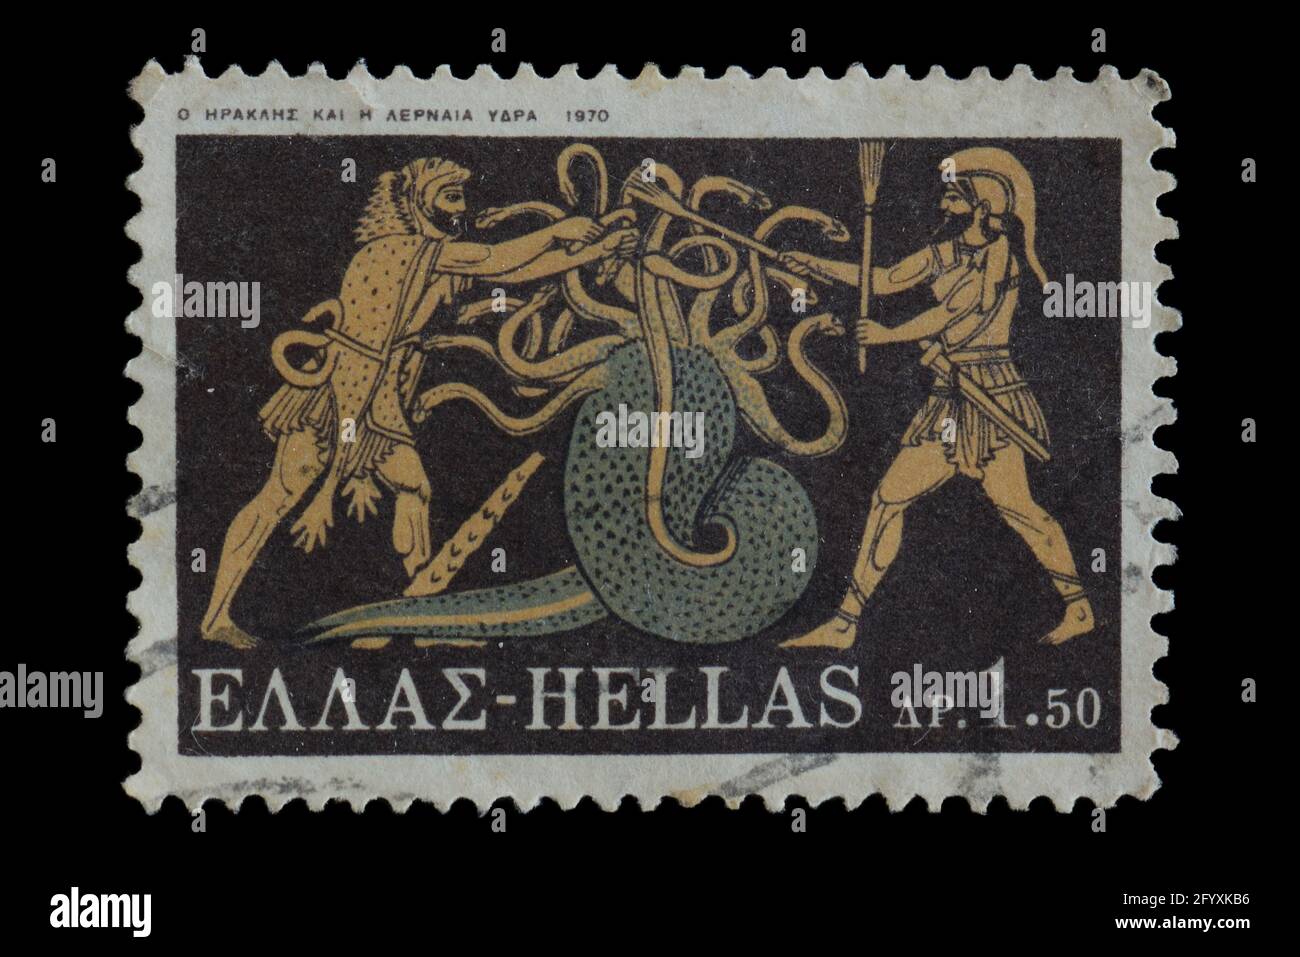 Hercules et IOLAUS ont fait la claque de l'Hydra de Lernaean. Illustration de la mythologie grecque sur timbre-poste d'époque imprimé en Grèce, 1970. Banque D'Images